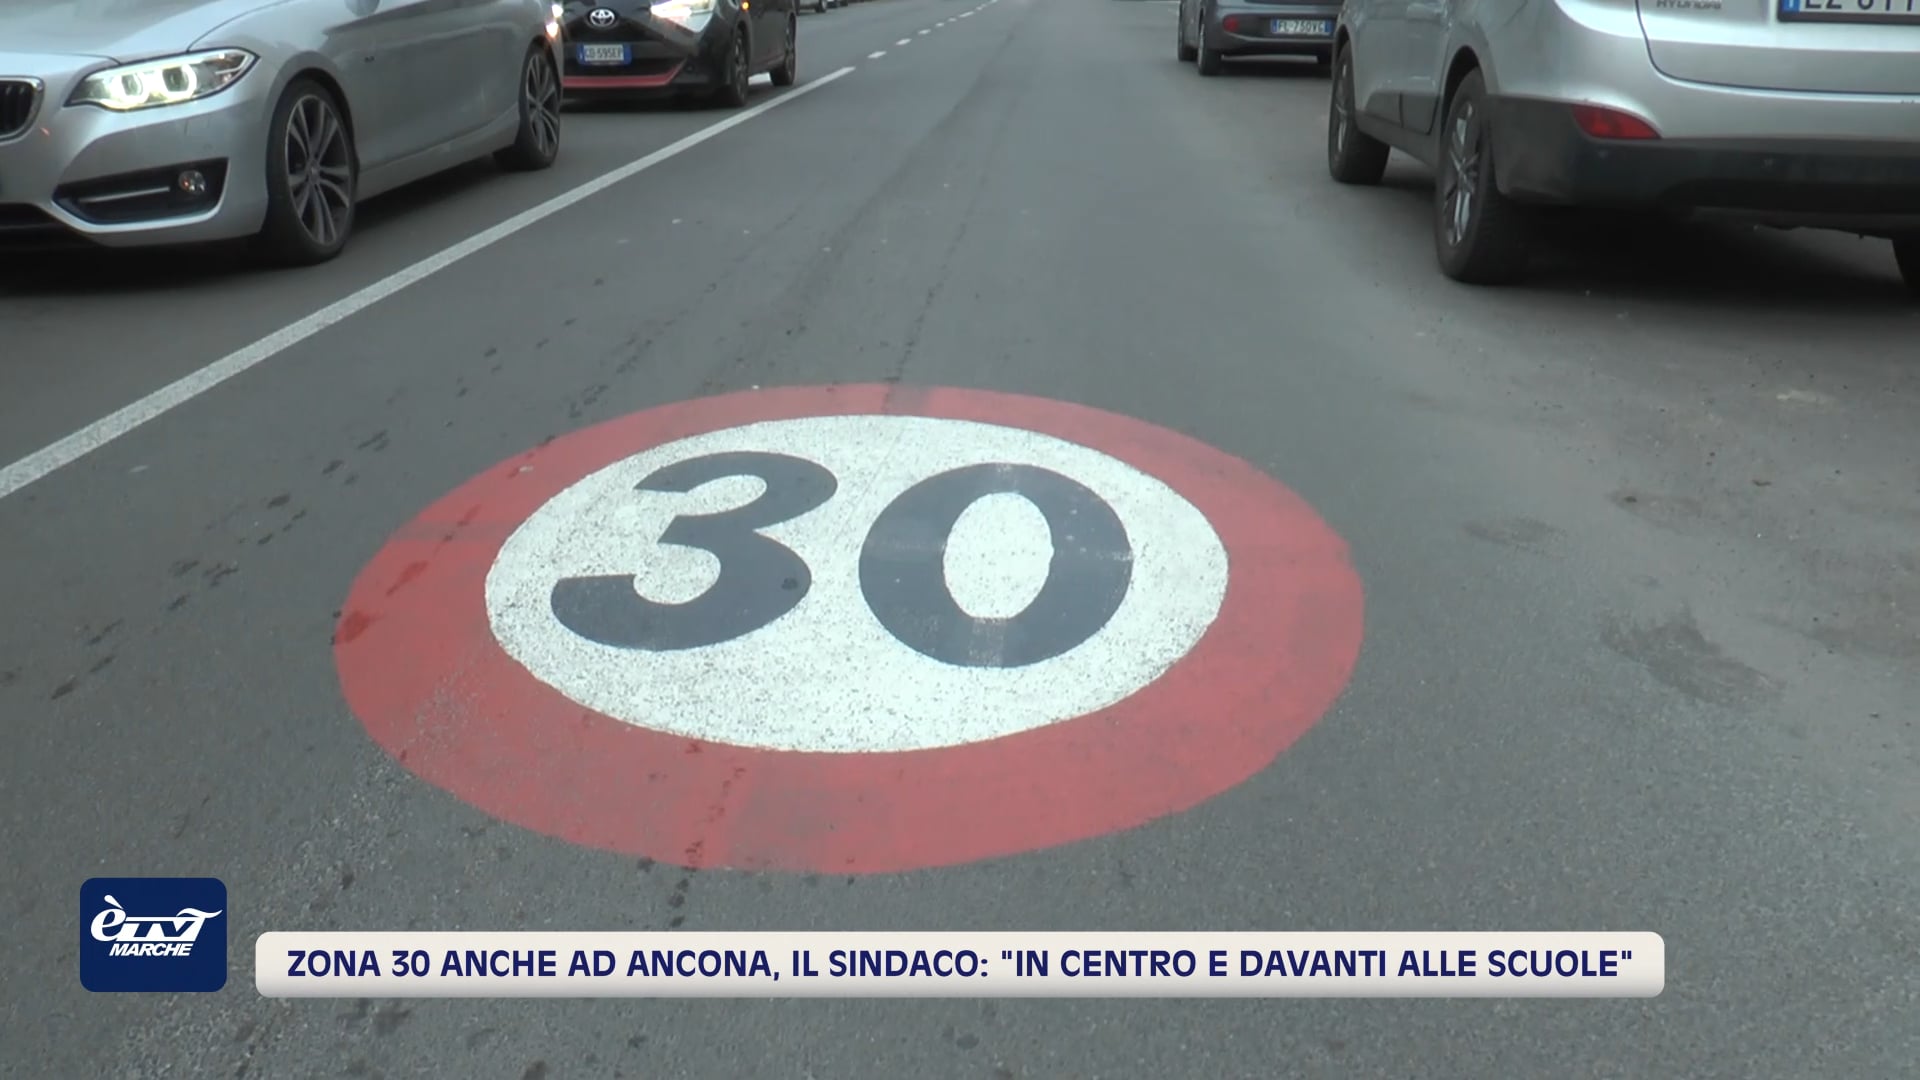 Zona 30 anche ad Ancona. Il sindaco: 